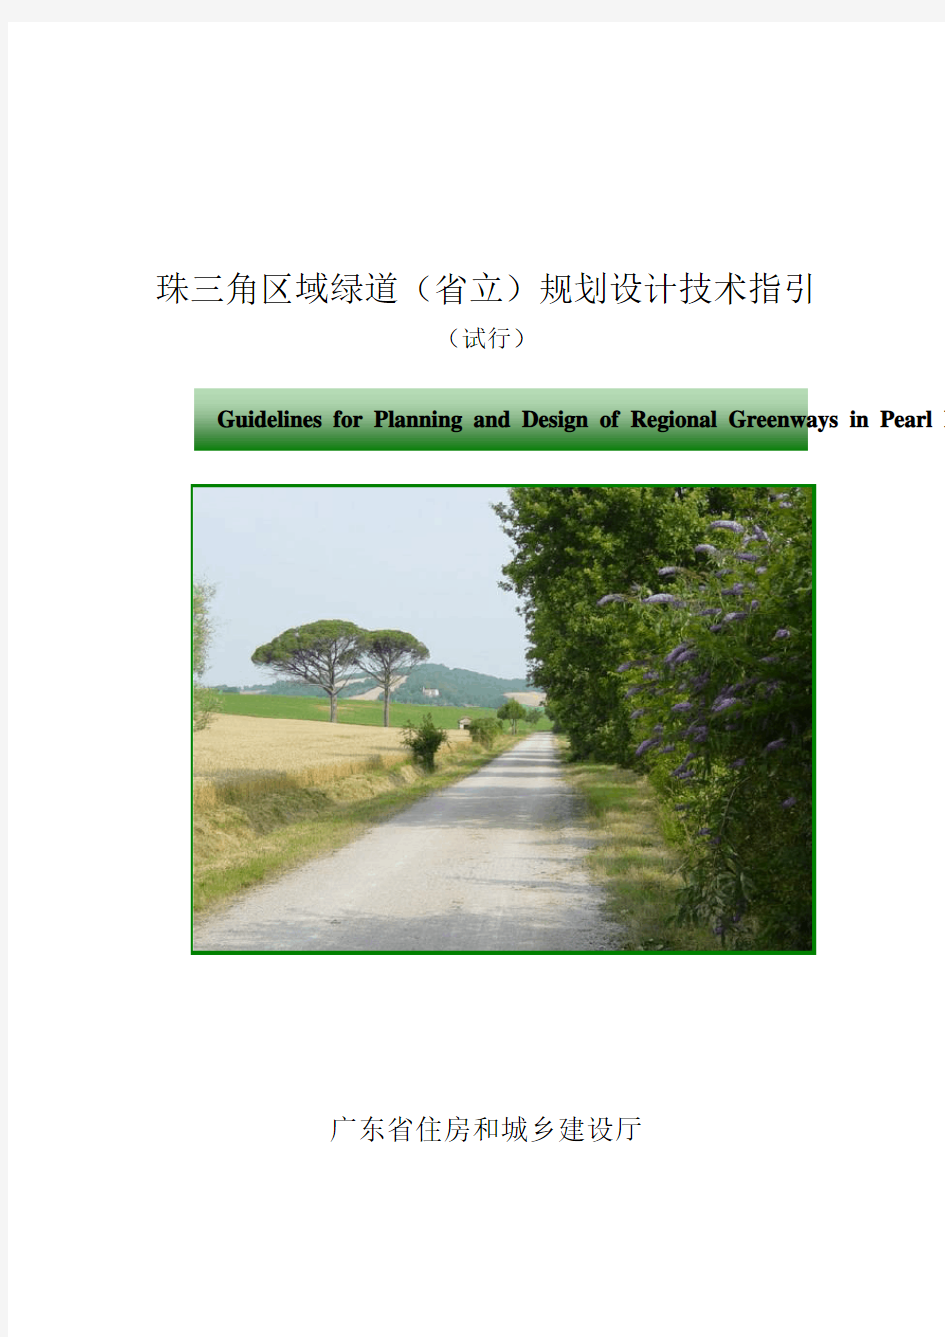 珠三角区域绿道(省立)规划设计技术指引2012